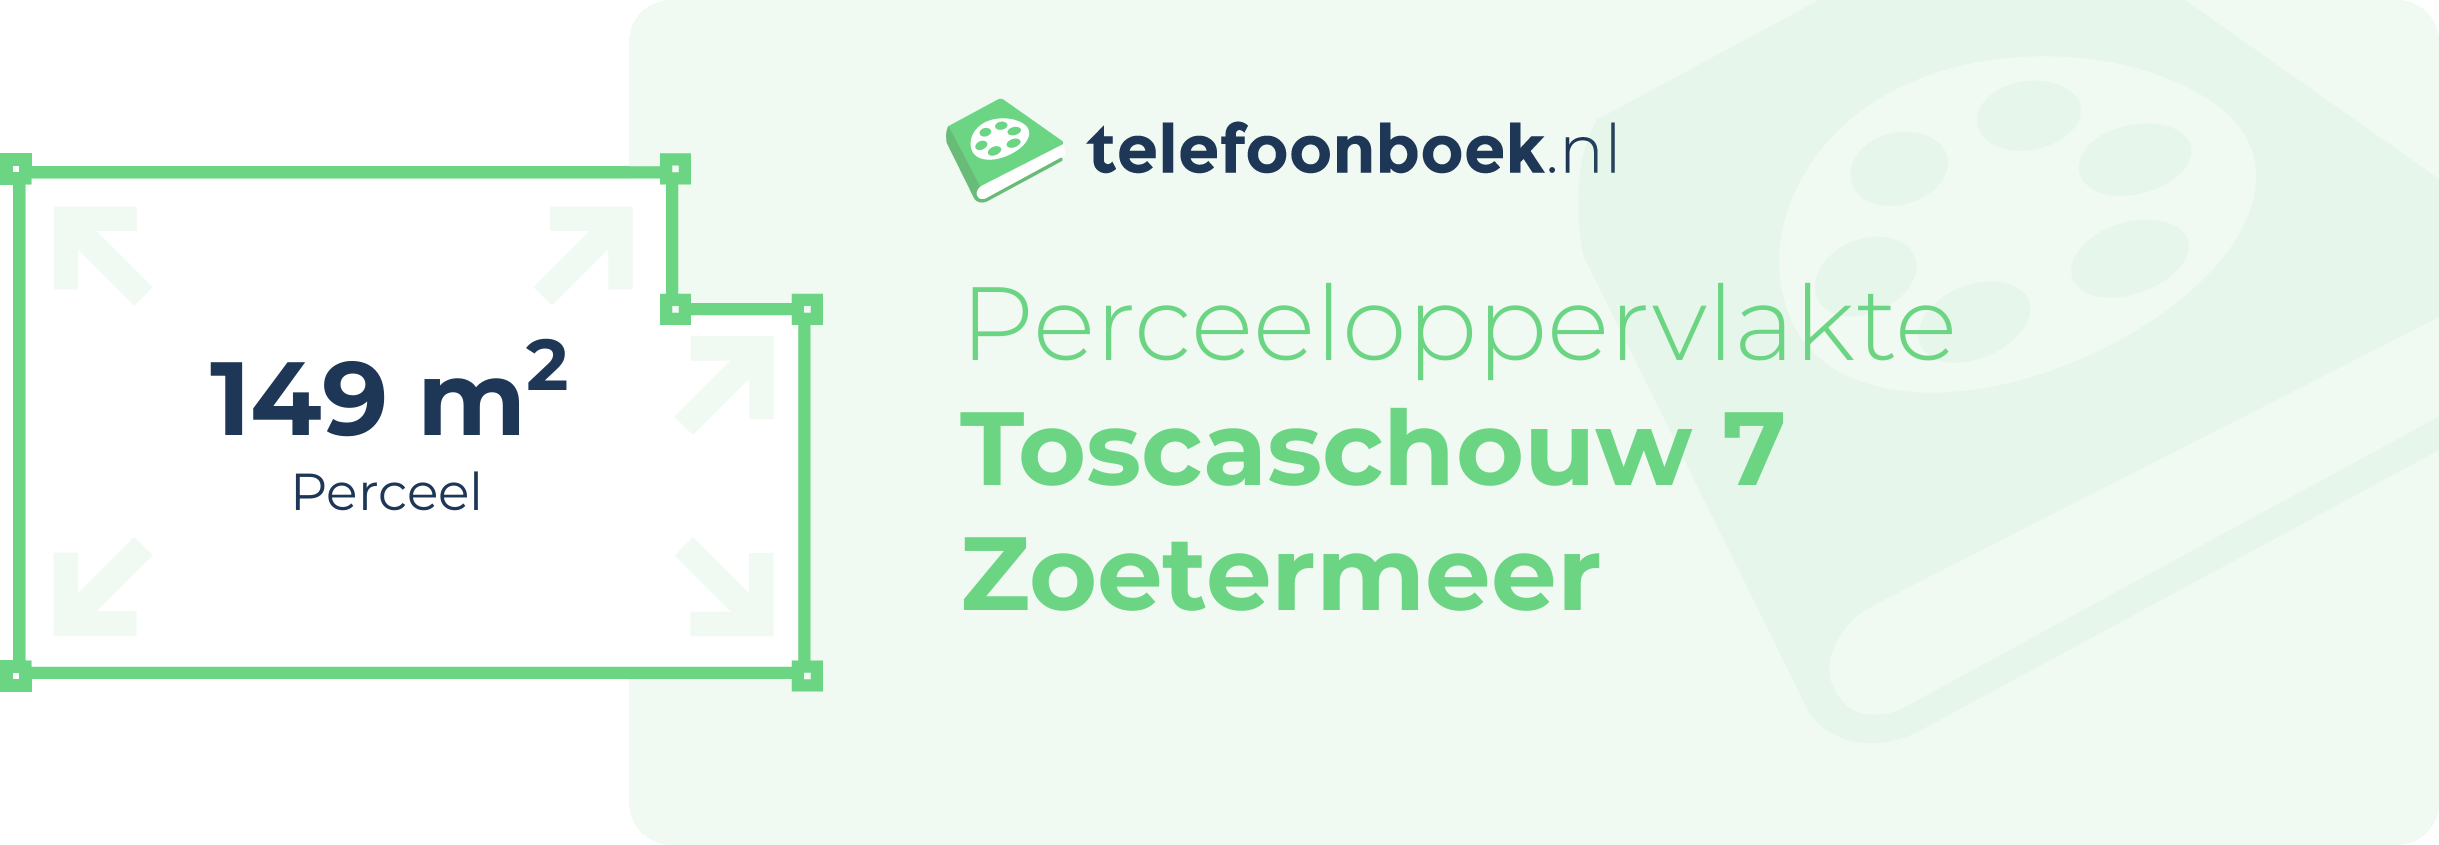 Perceeloppervlakte Toscaschouw 7 Zoetermeer